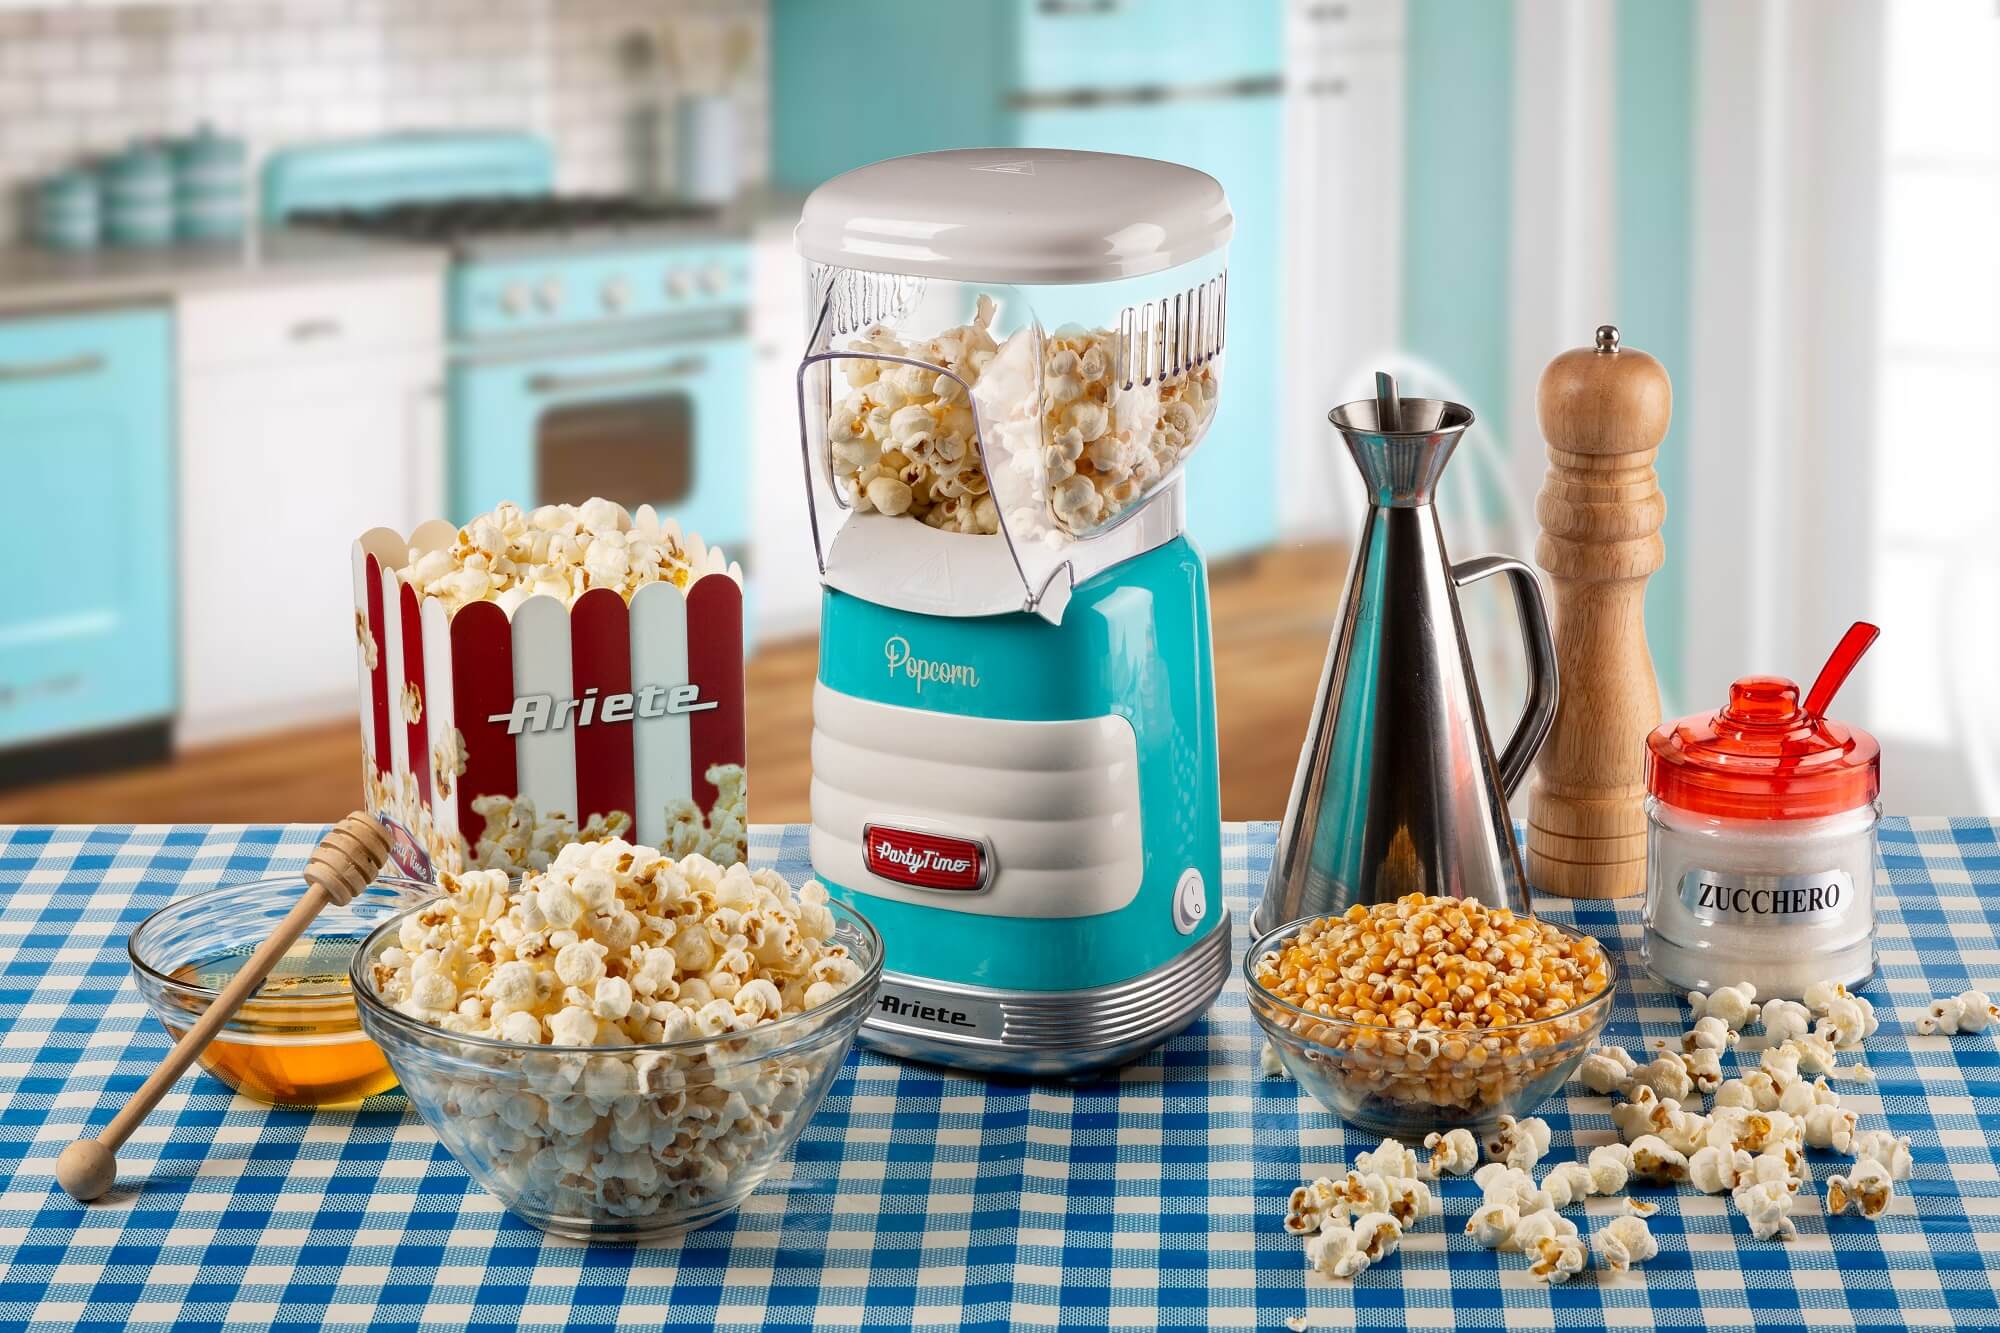 Ariete Pop Corn Party Time macchina per popcorn Blu, Trasparente 1100 W